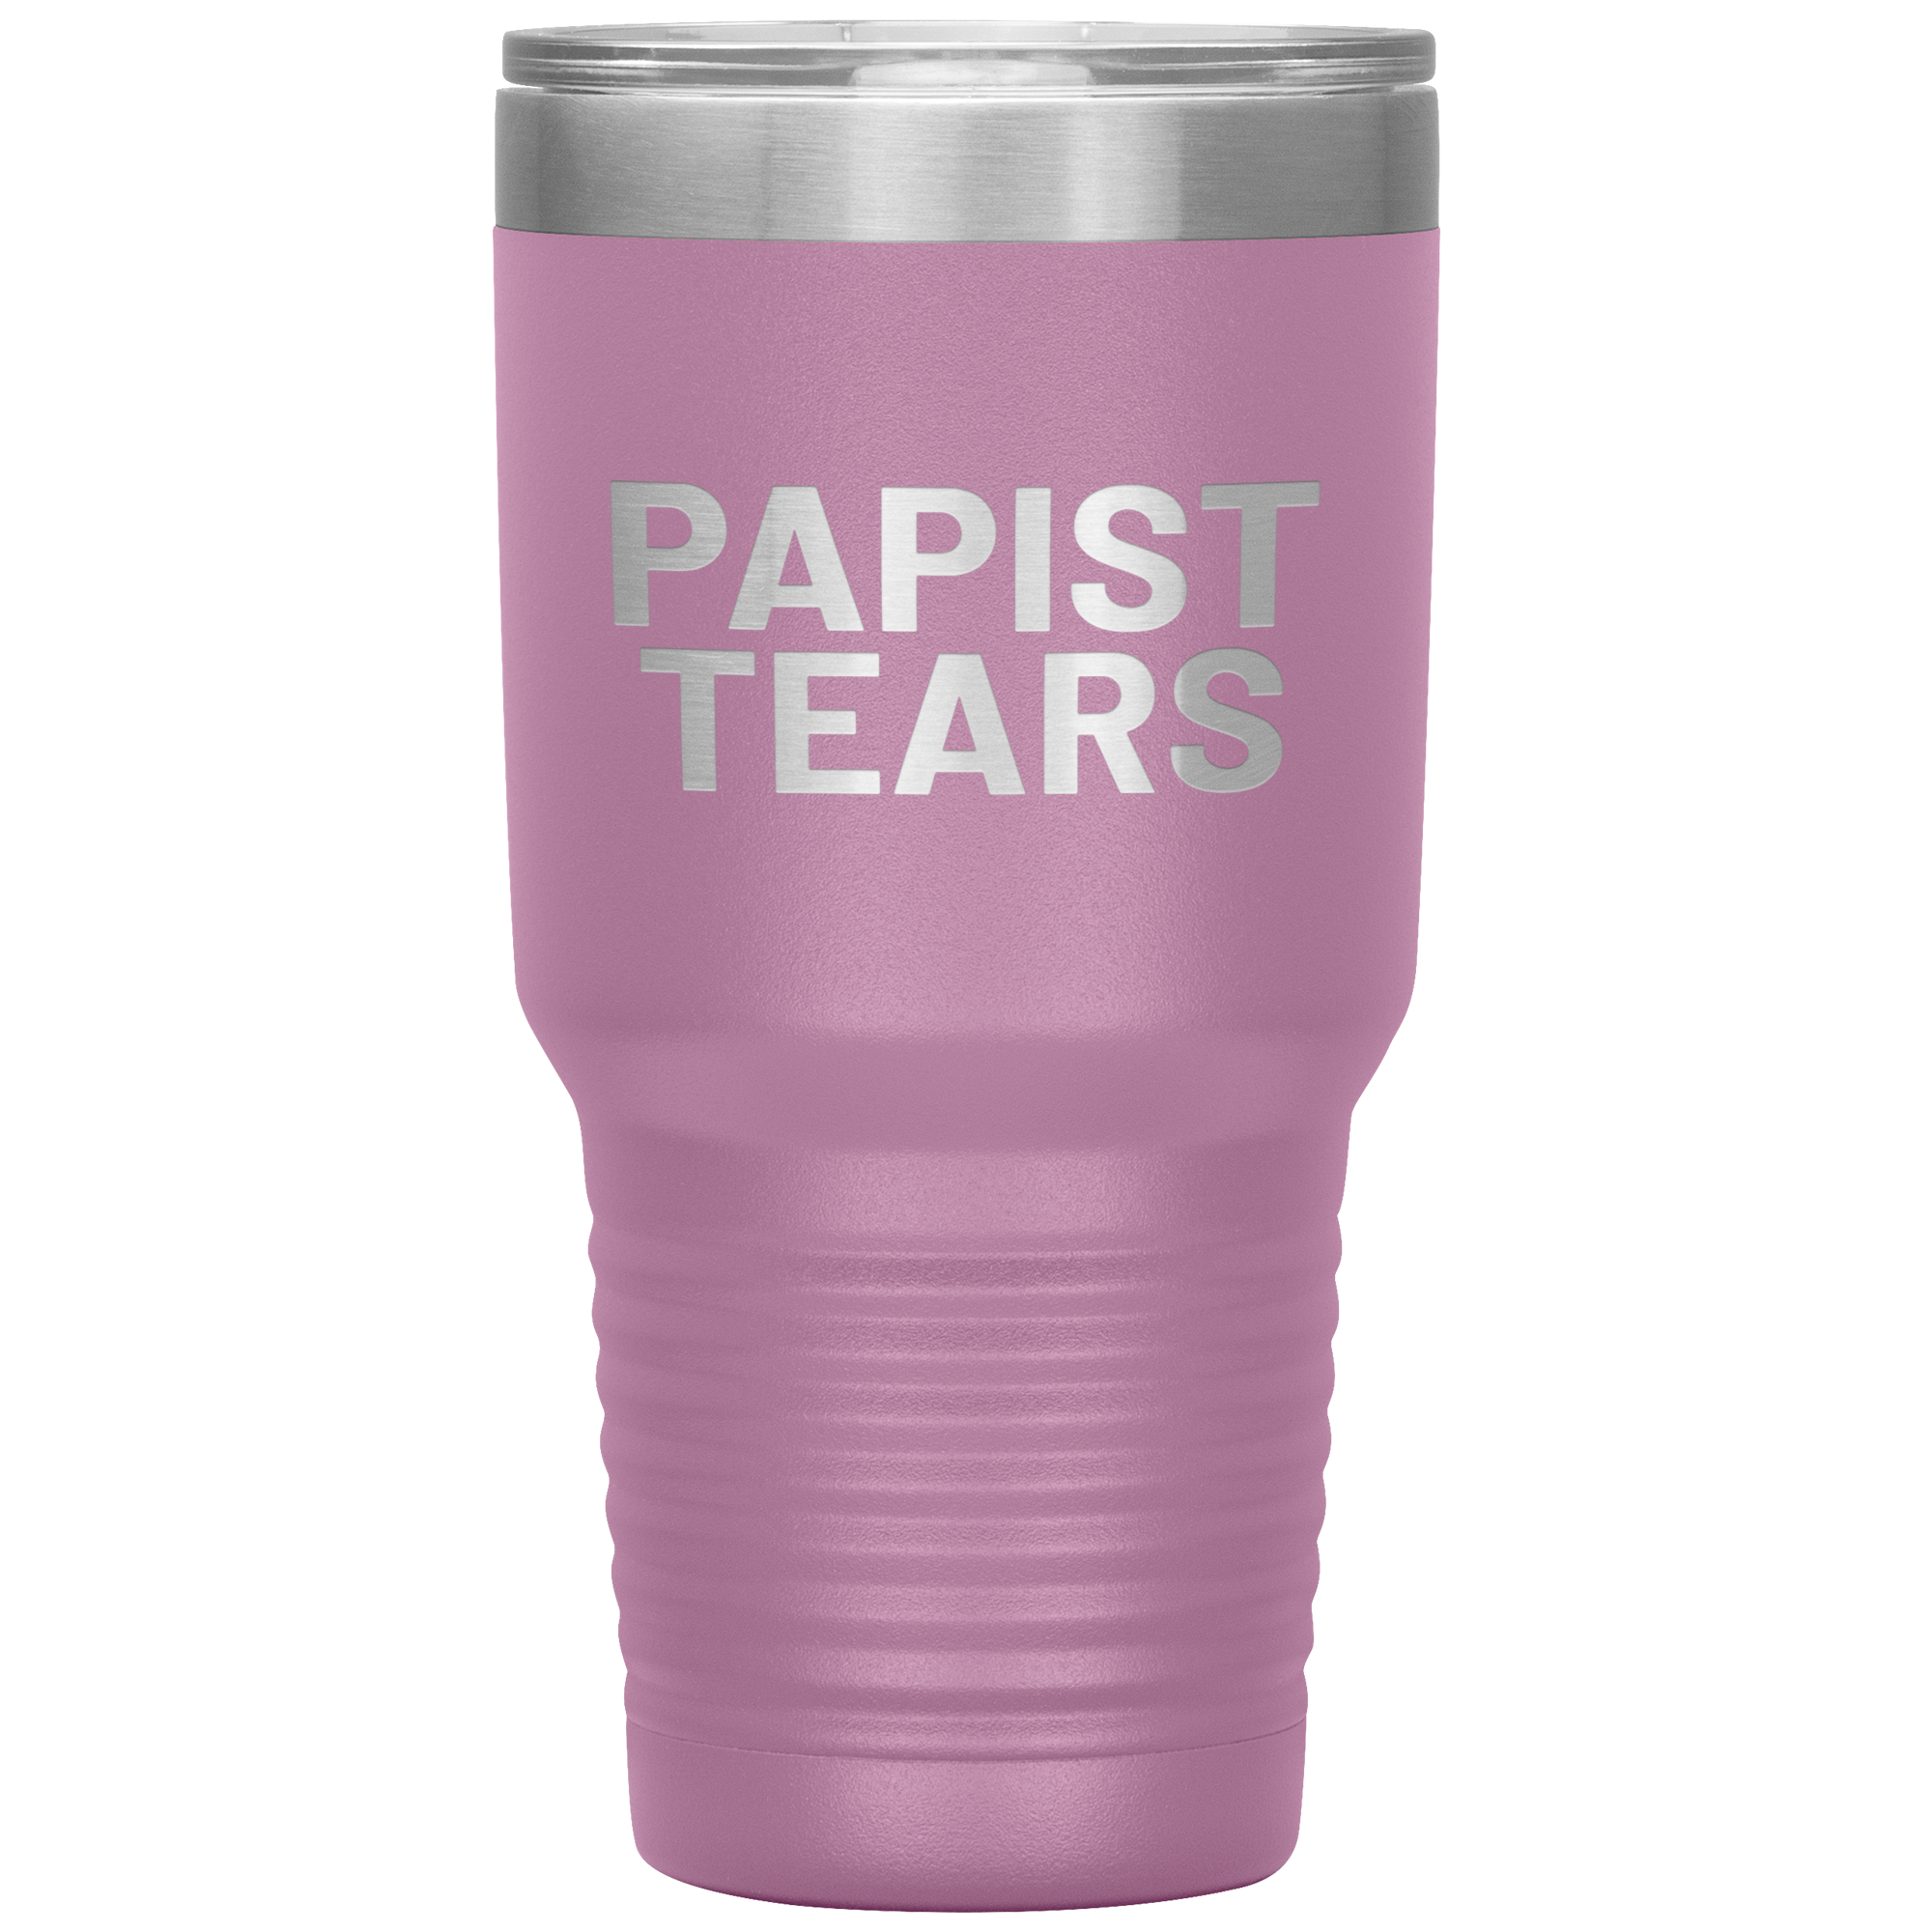 Papist Tears